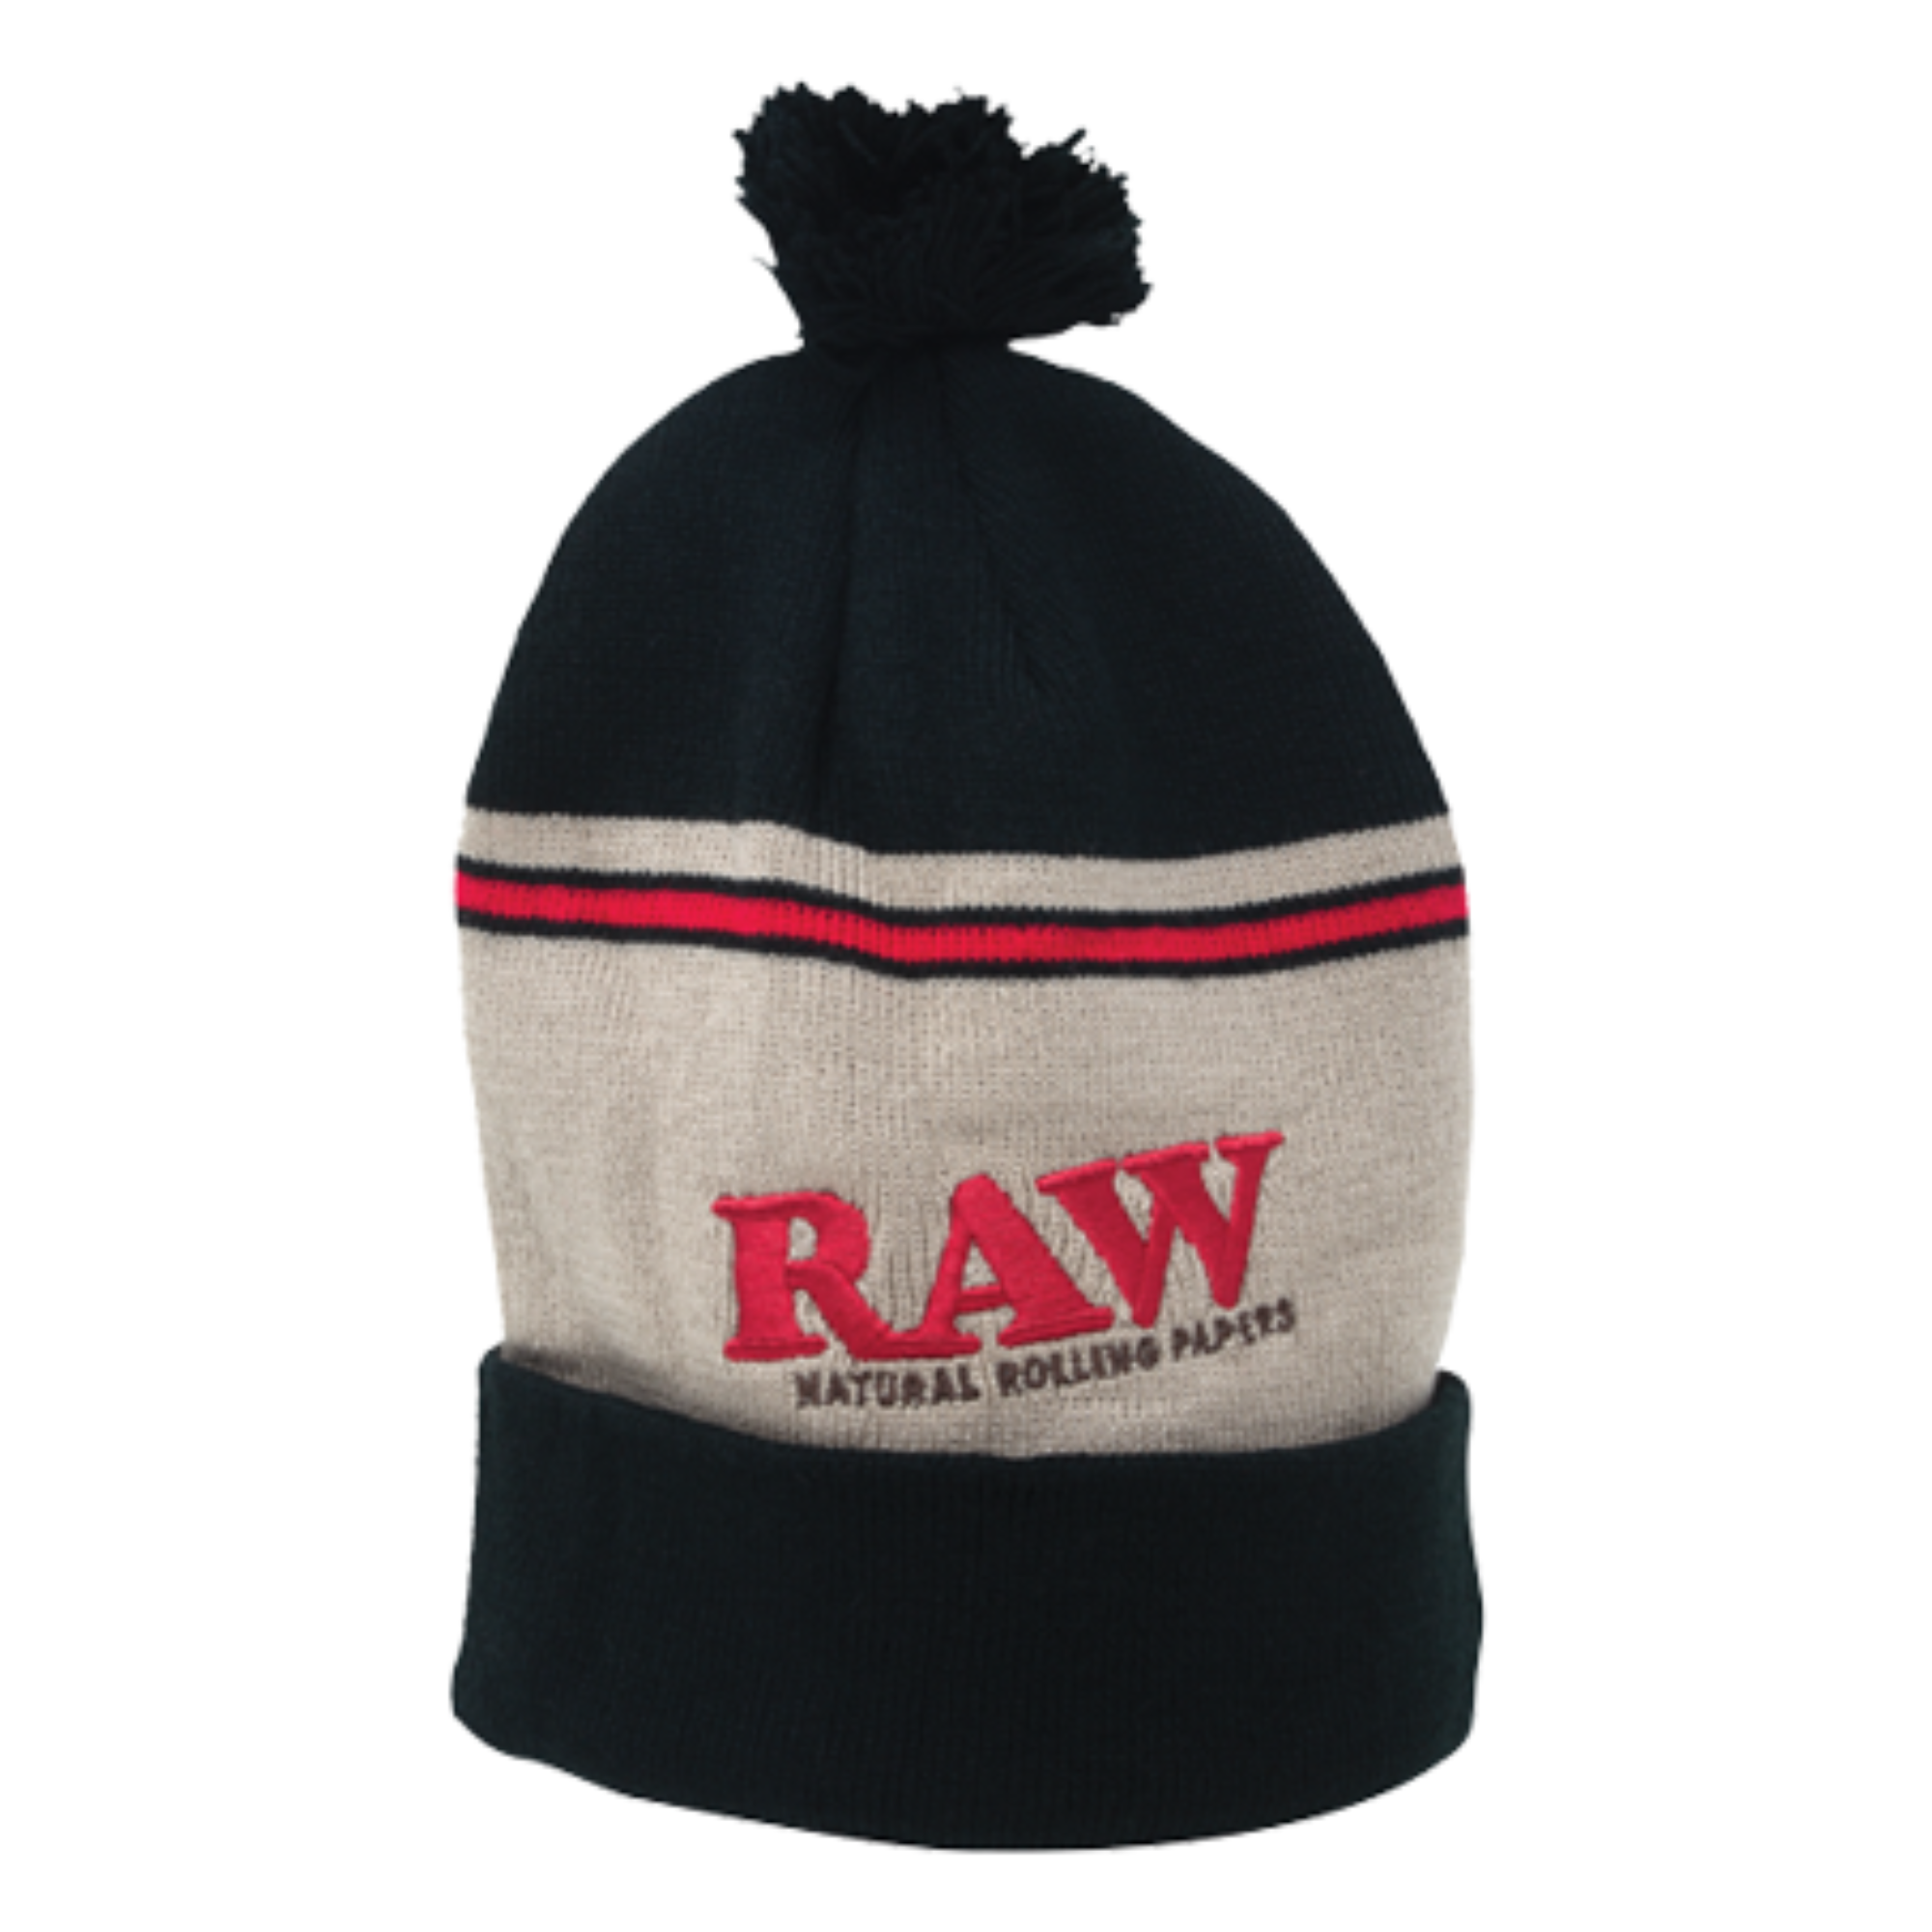 raw skins hat| matriarch.la